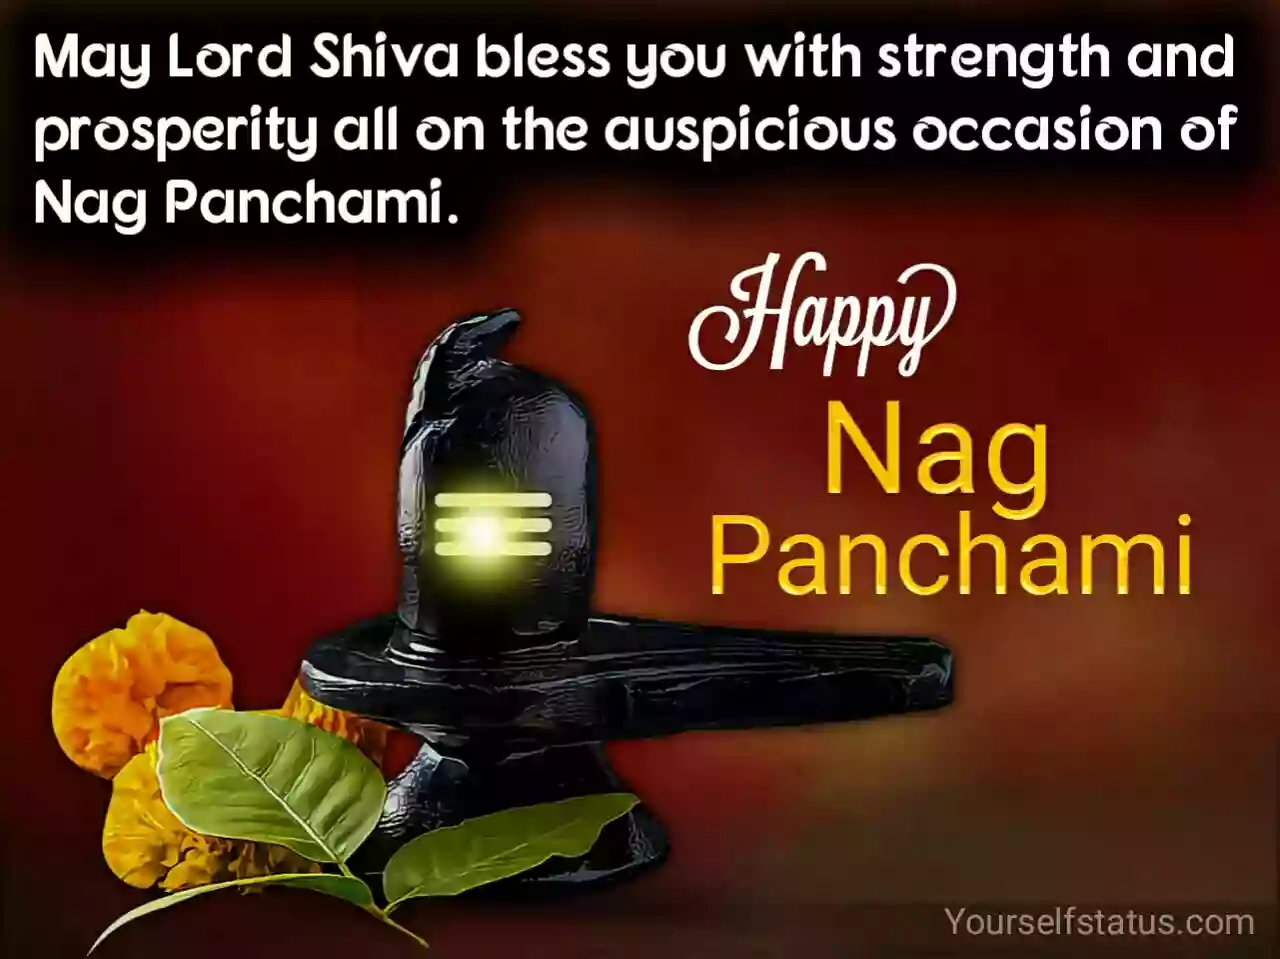 Happy Nag panchami wishes